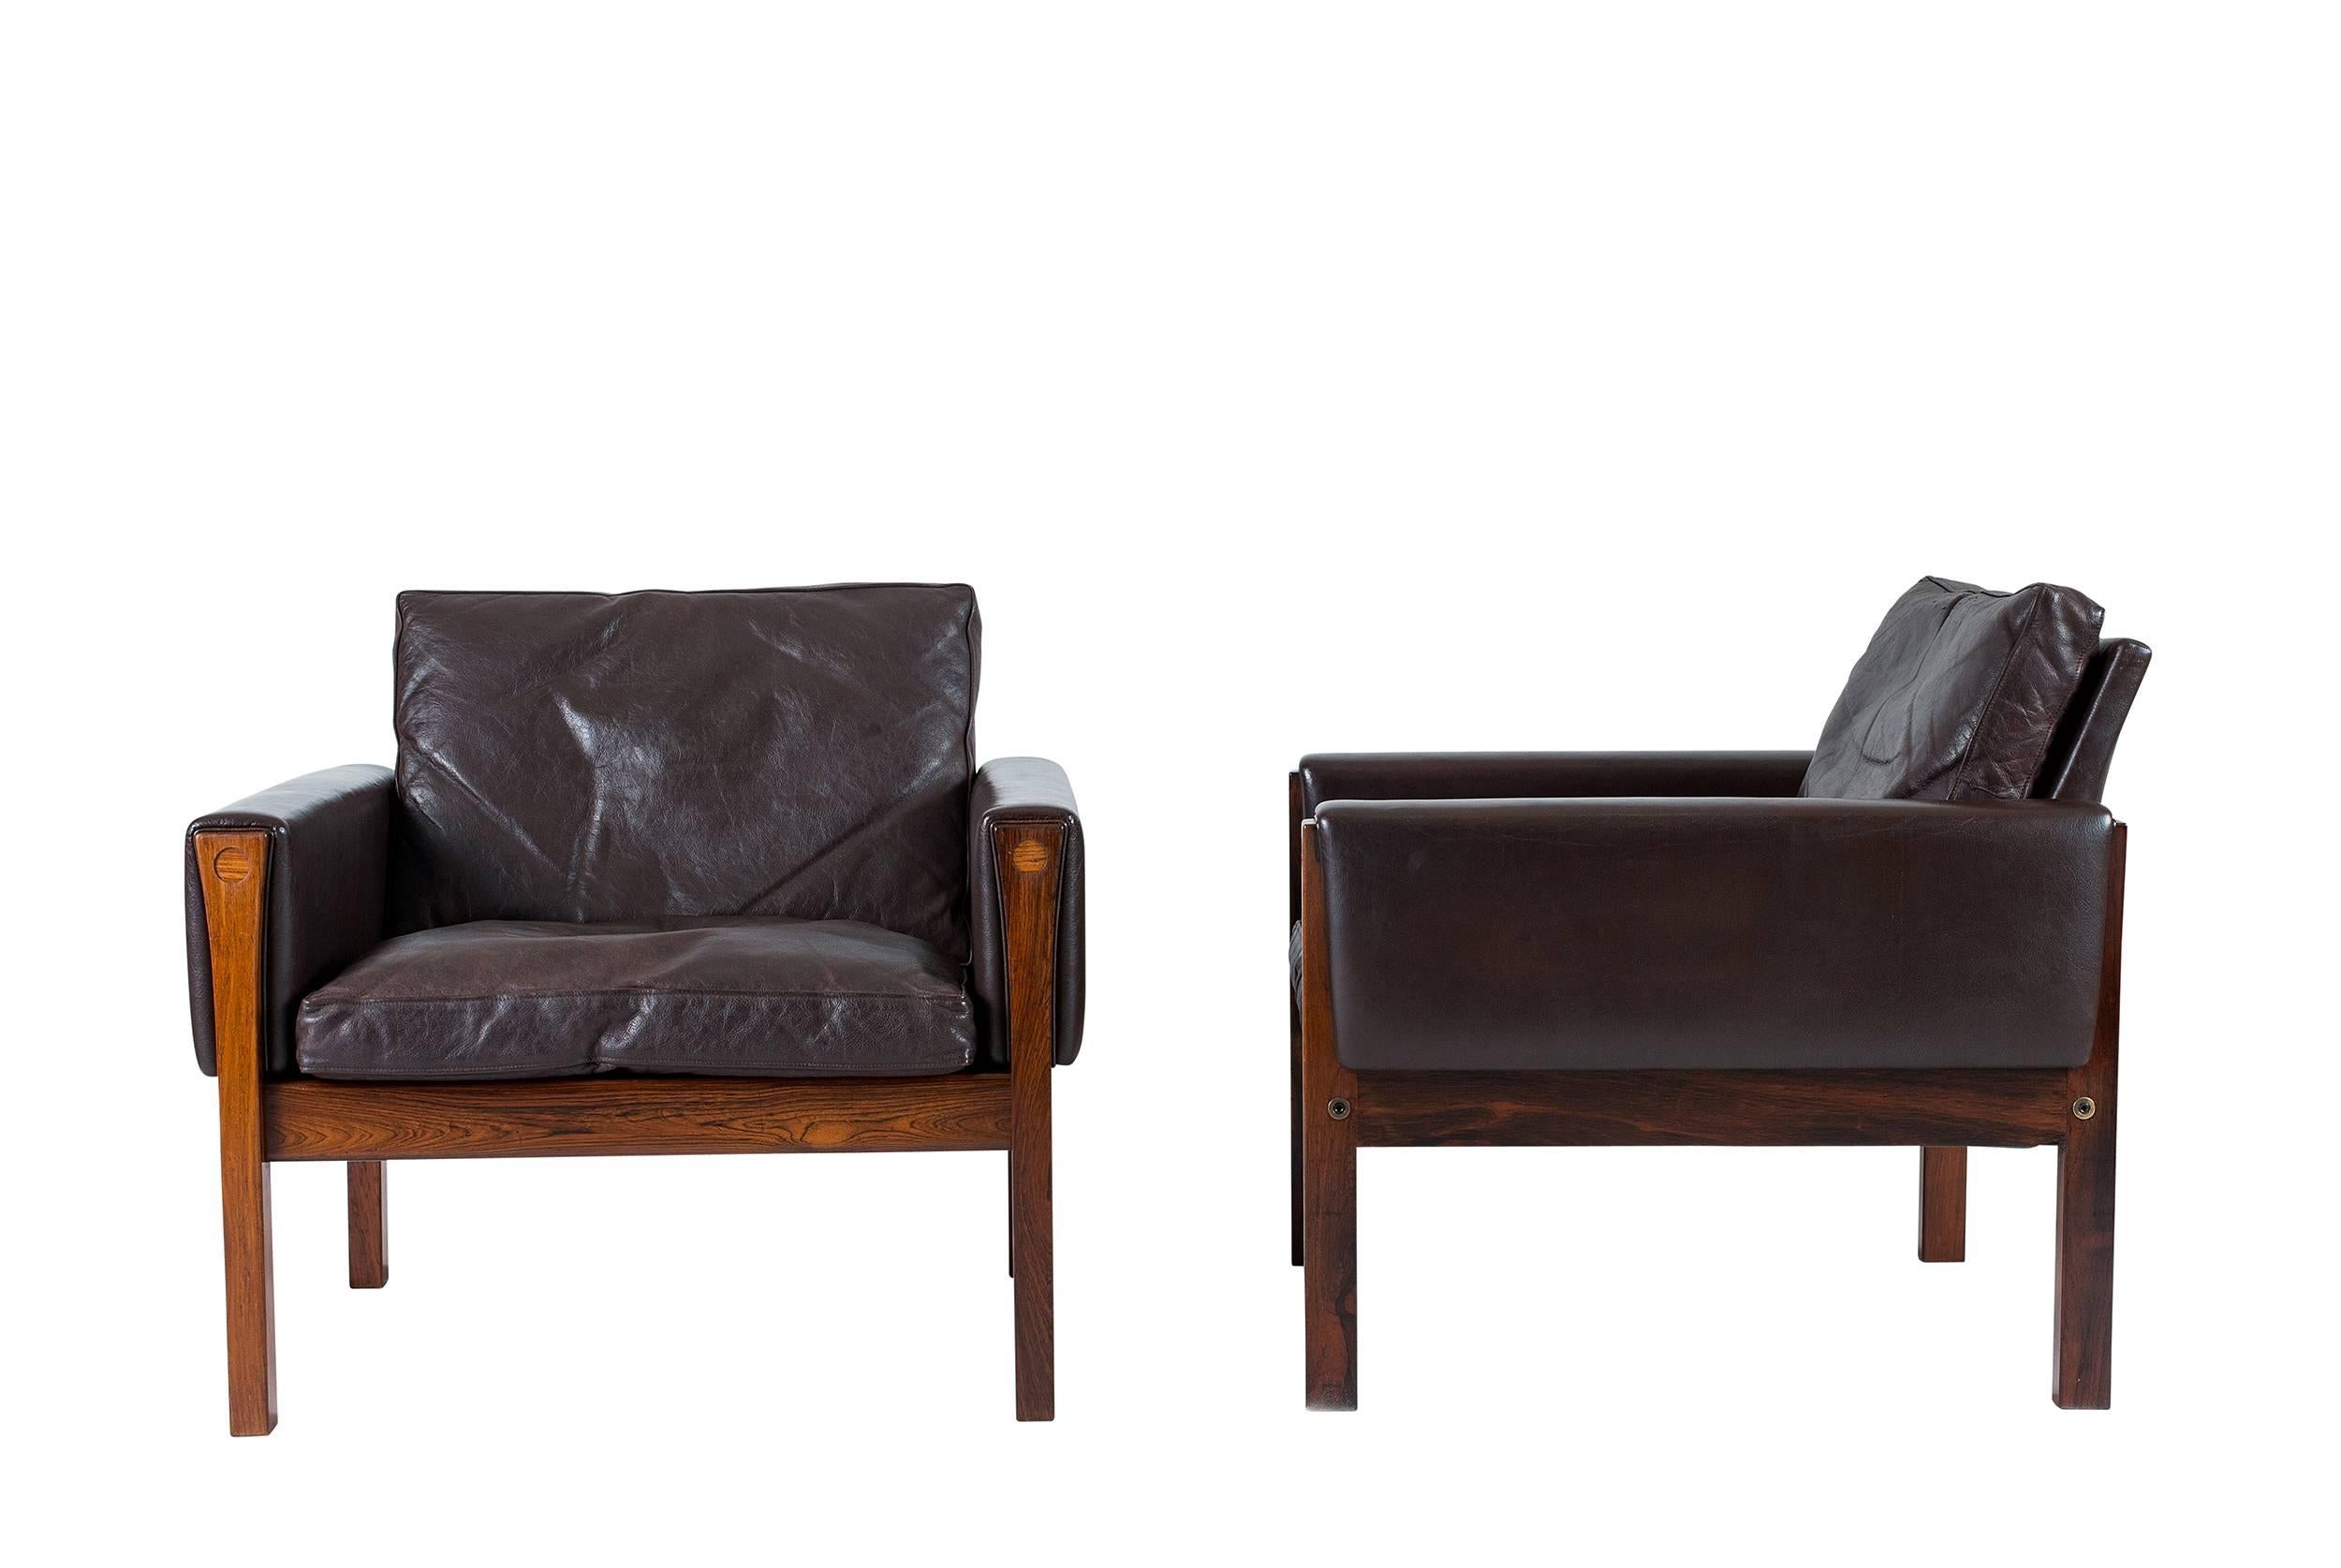 Paire de chaises longues Hans Wegner AP 62 conçues en 1960 et produites par A. P. Stolen.